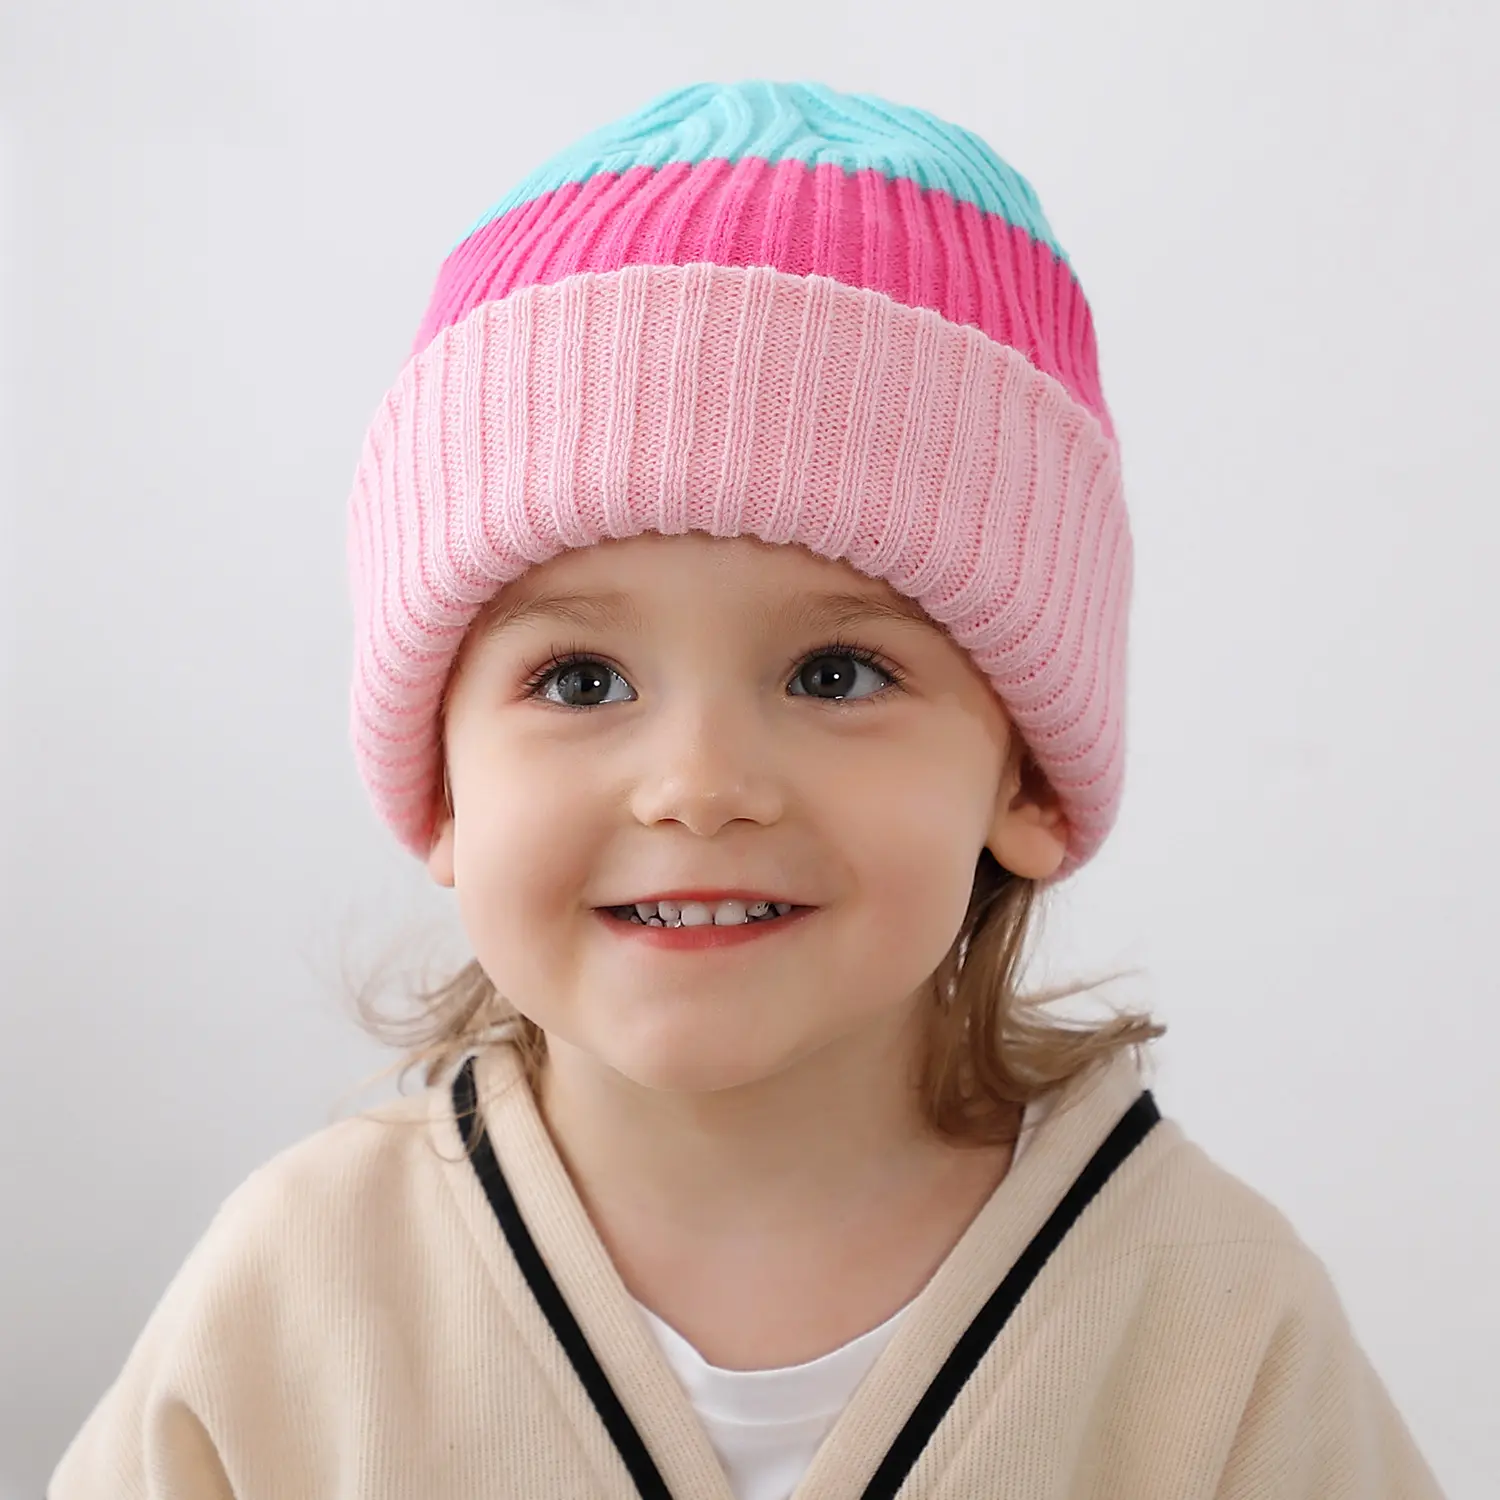 2023 yeni moda toptan çocuklar bere şapka çocuklar bere şapka çocuk şerit bebek bere örme kap